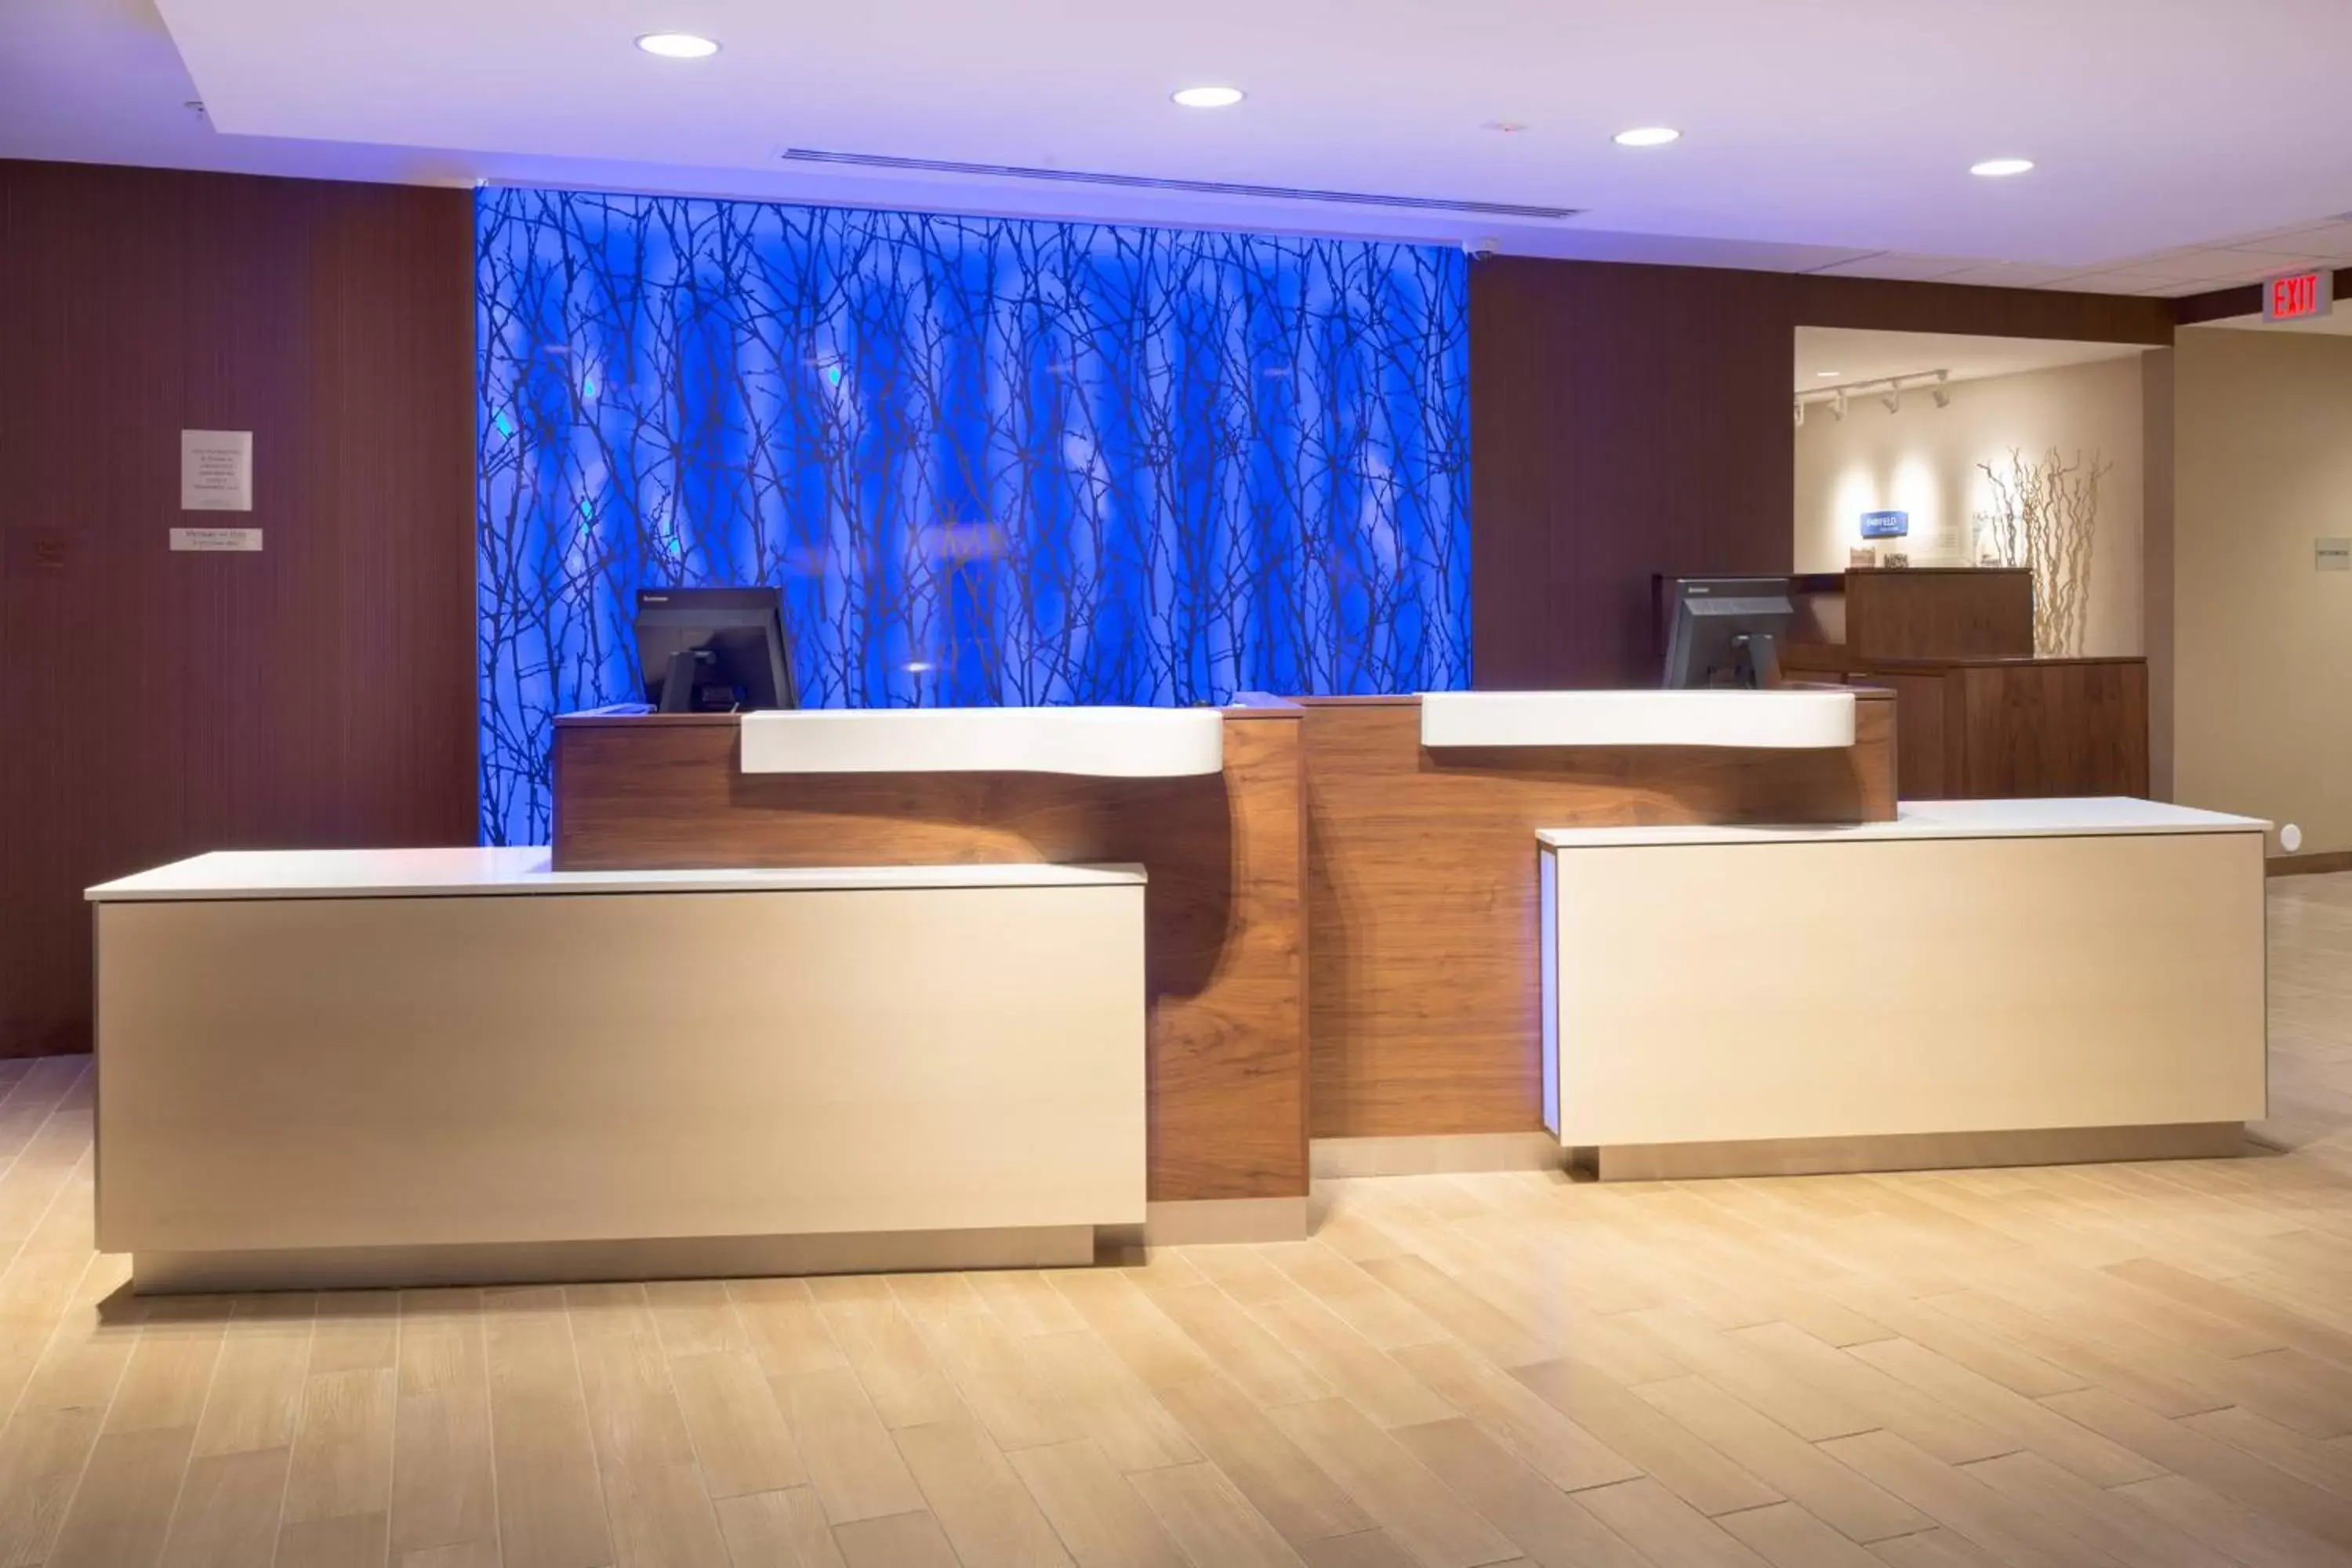 Lobby or reception, Lobby/Reception in Fairfield Inn & Suites by Marriott Burlington